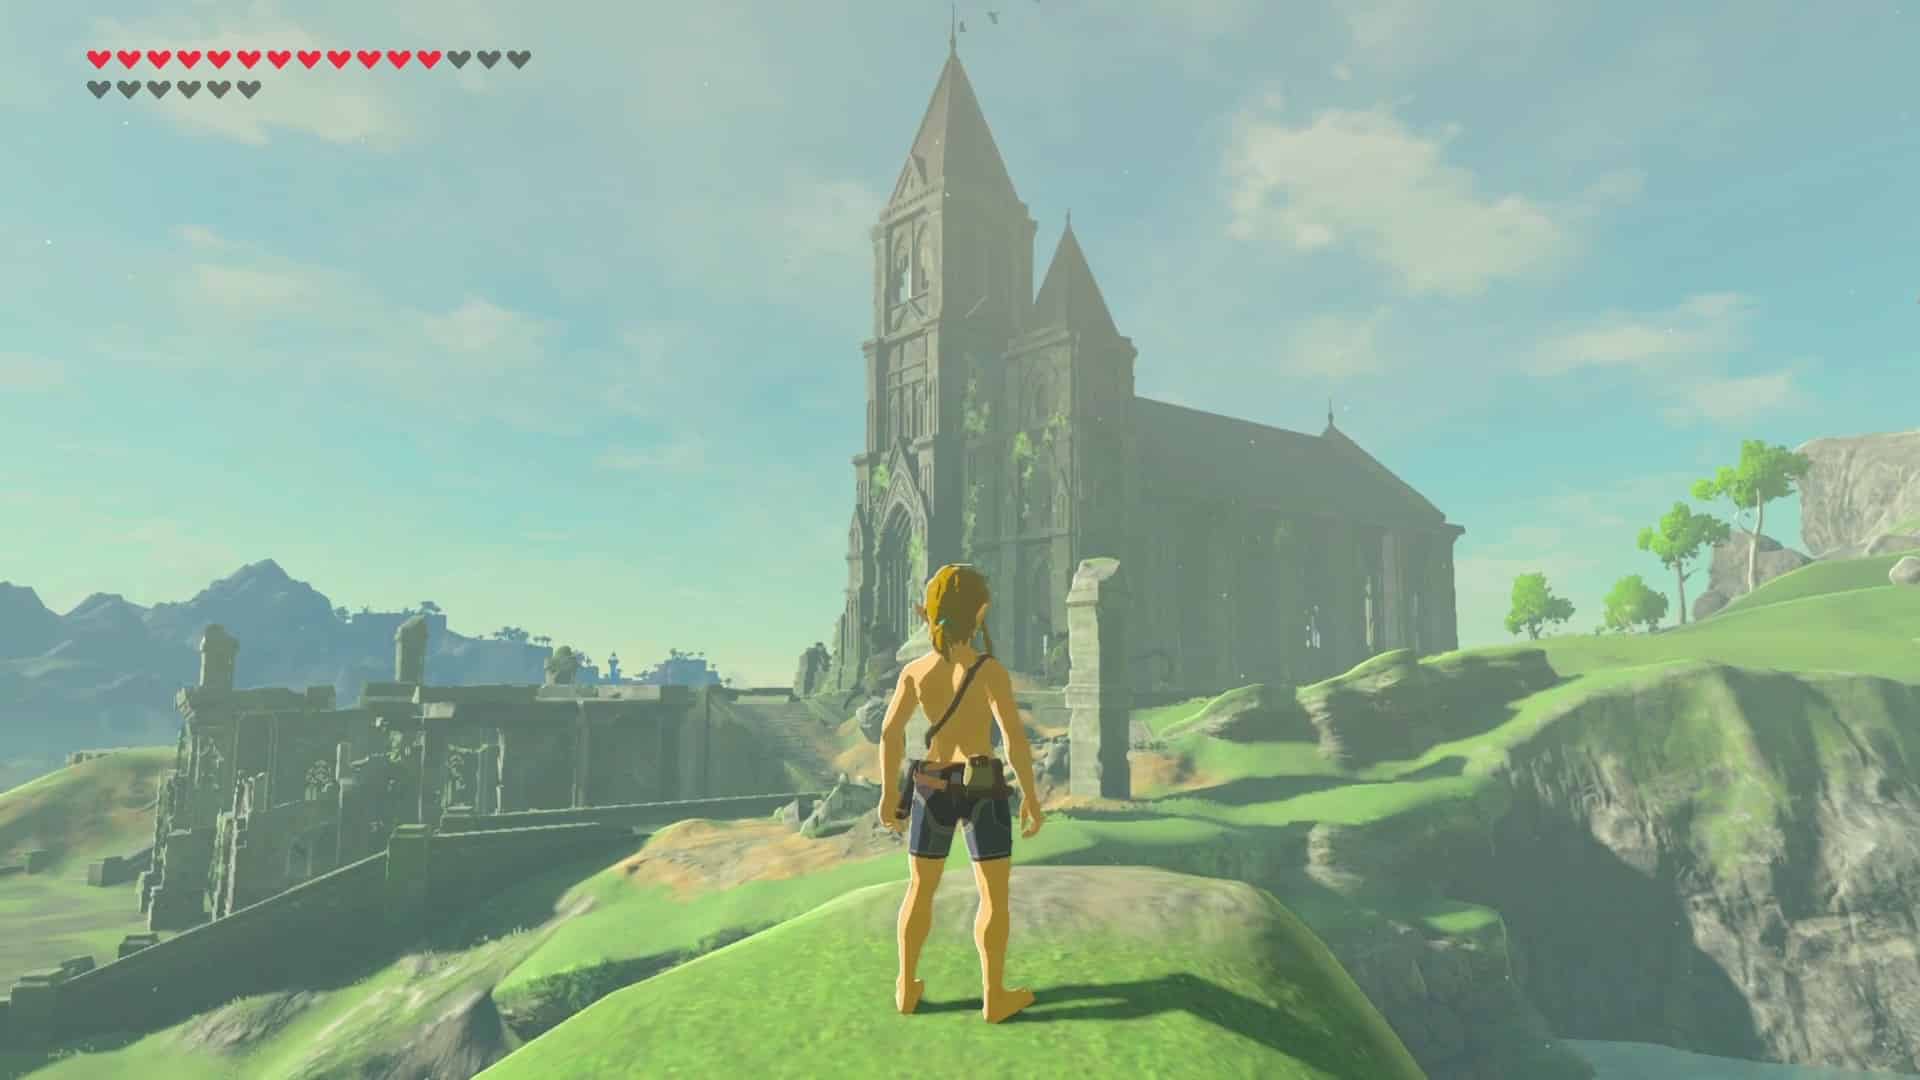 Jeux vidéo. La folle histoire de la création de « Zelda »